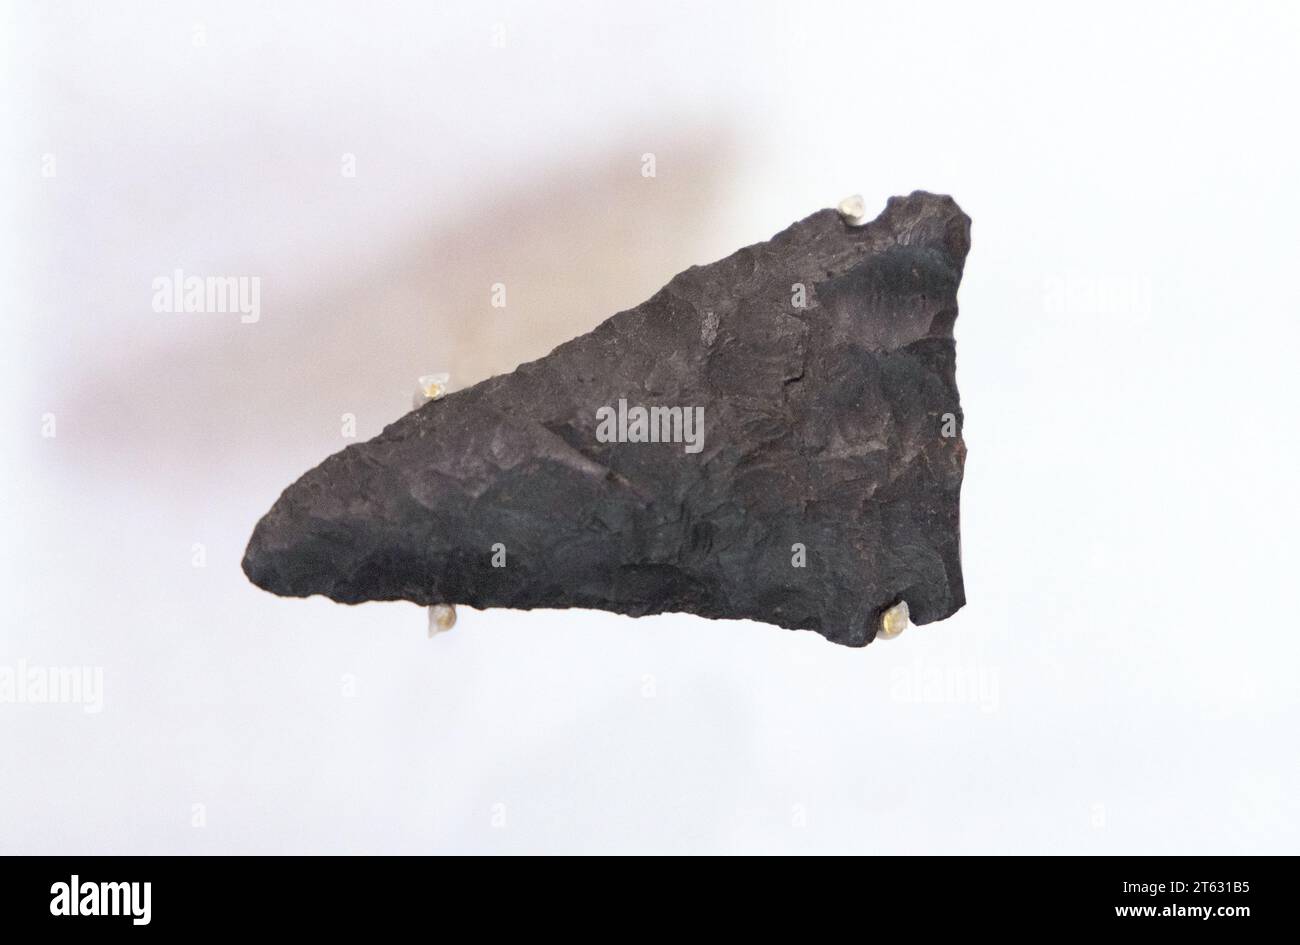 Ancien artefact de couteau viking du lieu historique national de l'Anse aux Meadows, Terre-Neuve, Canada ; une colonie nordique/viking du 11e siècle Banque D'Images